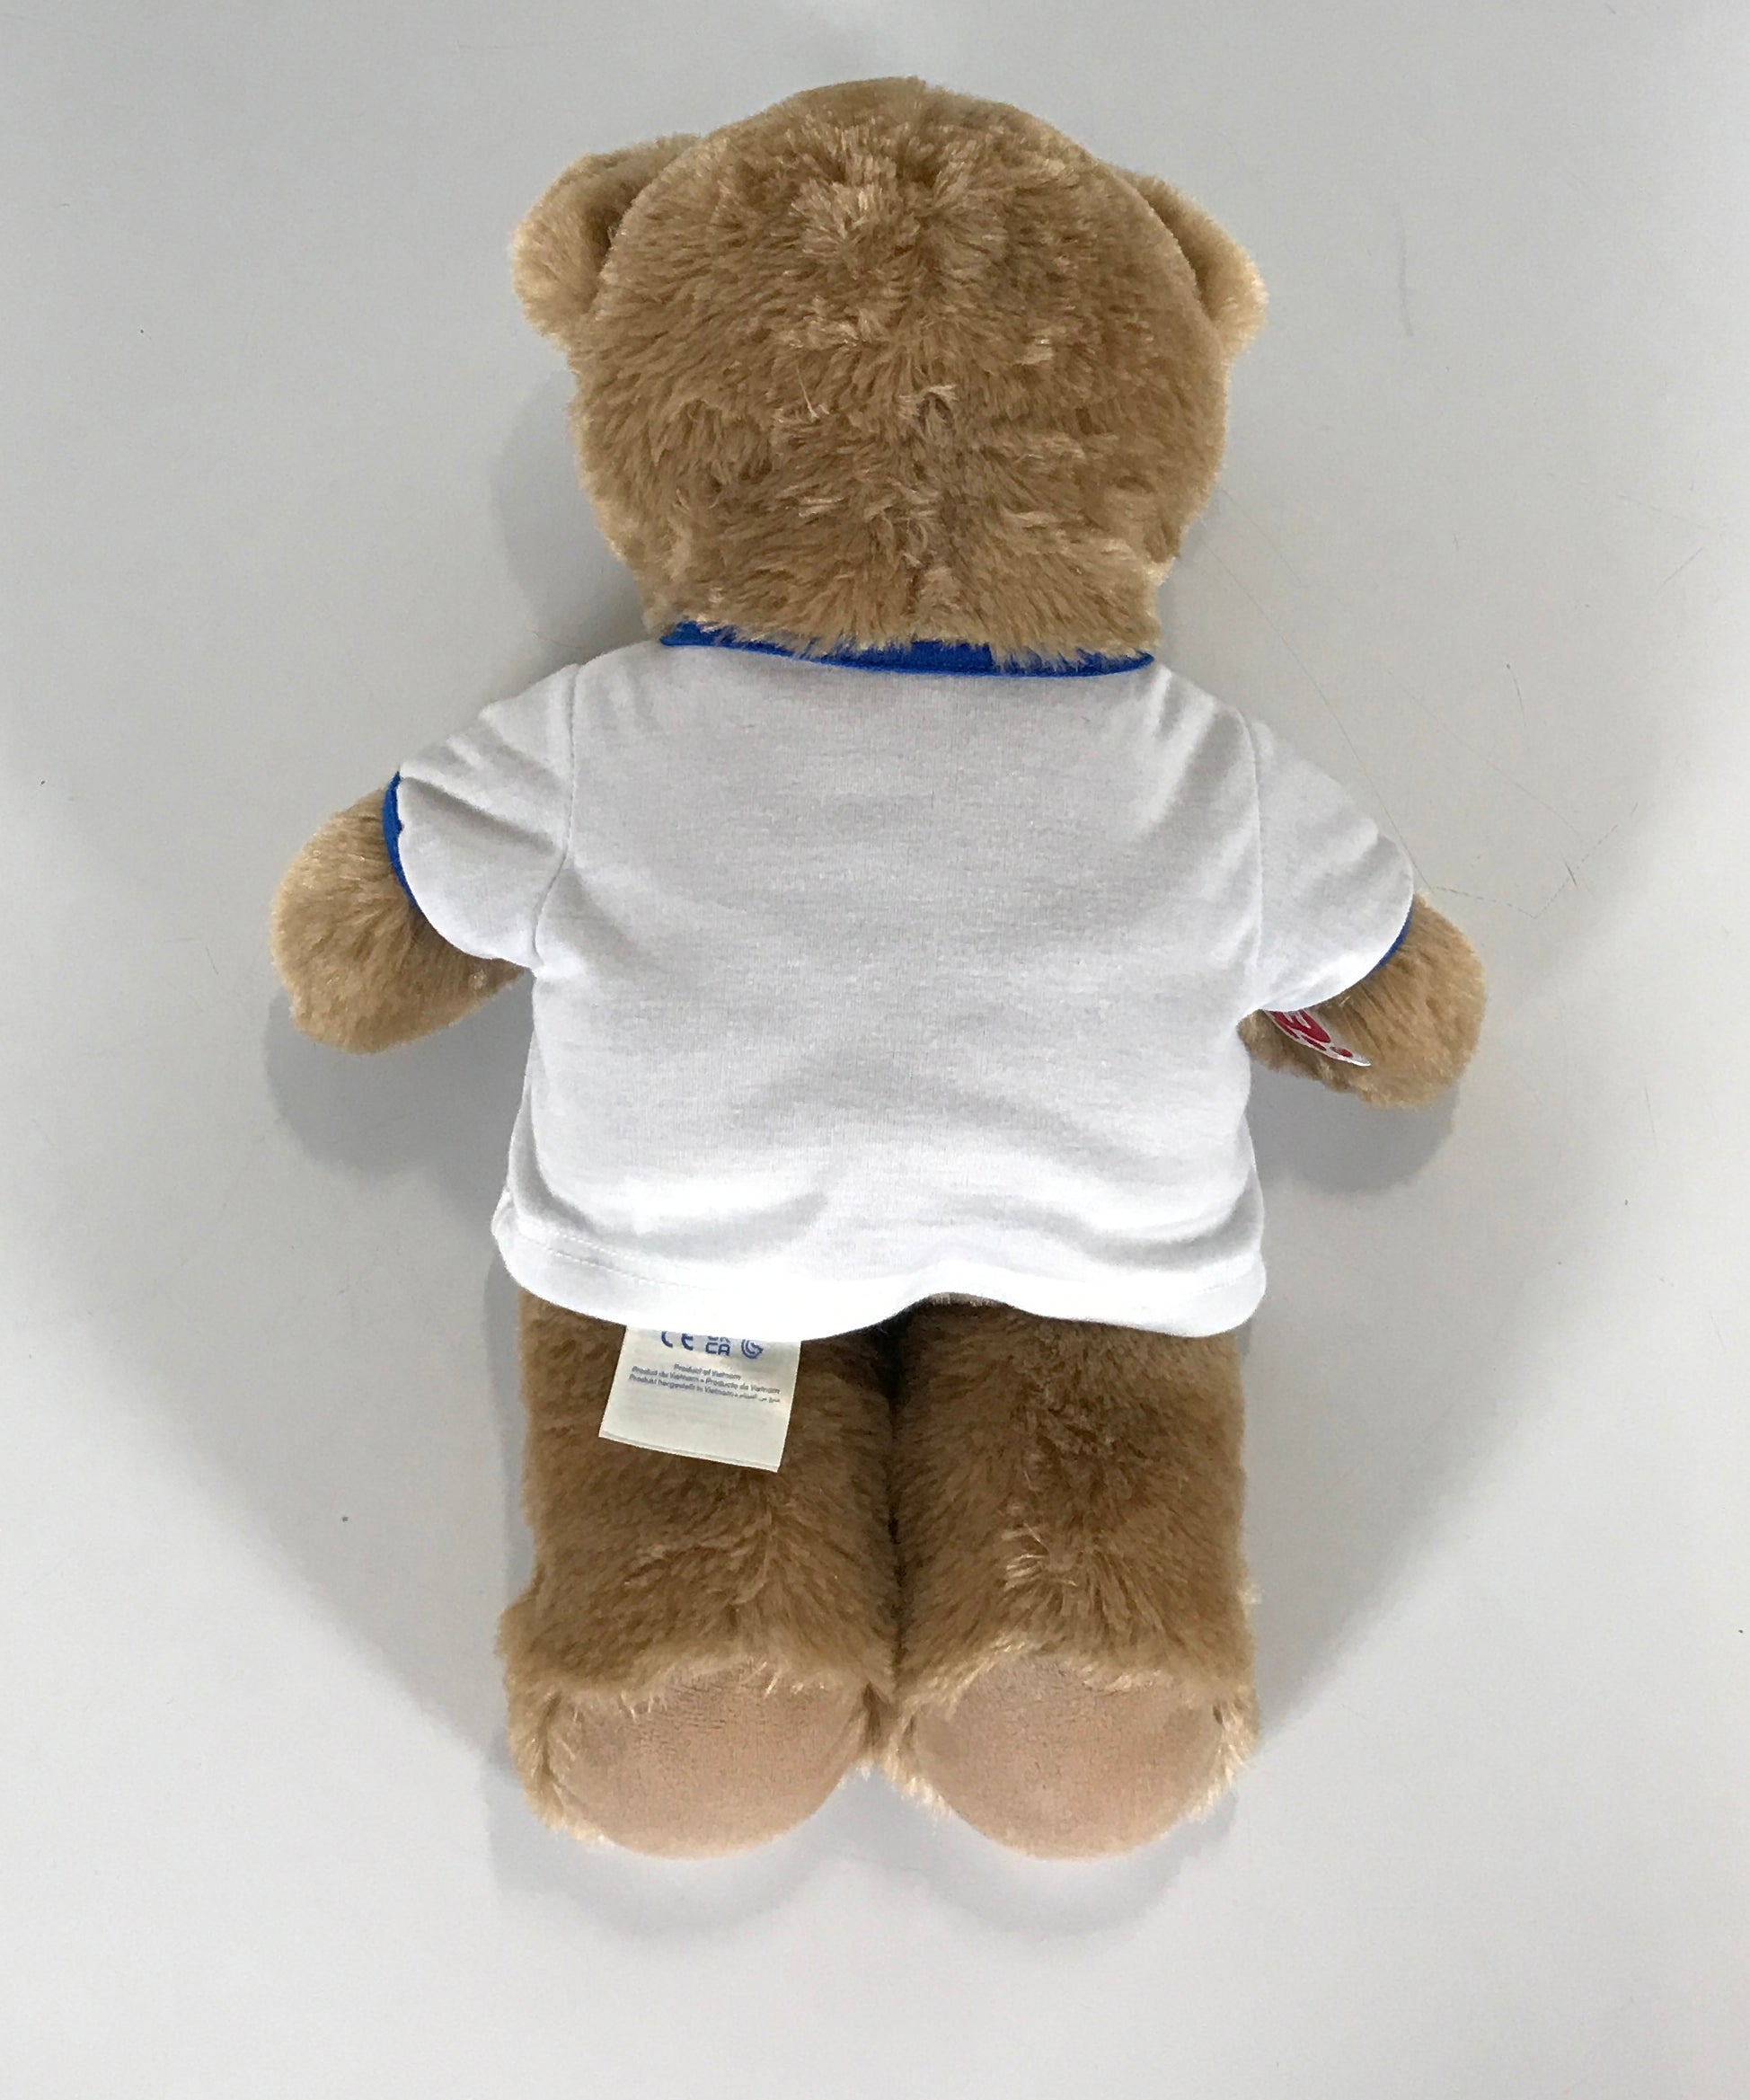 Build-a-Bear Tan Teddy Bear